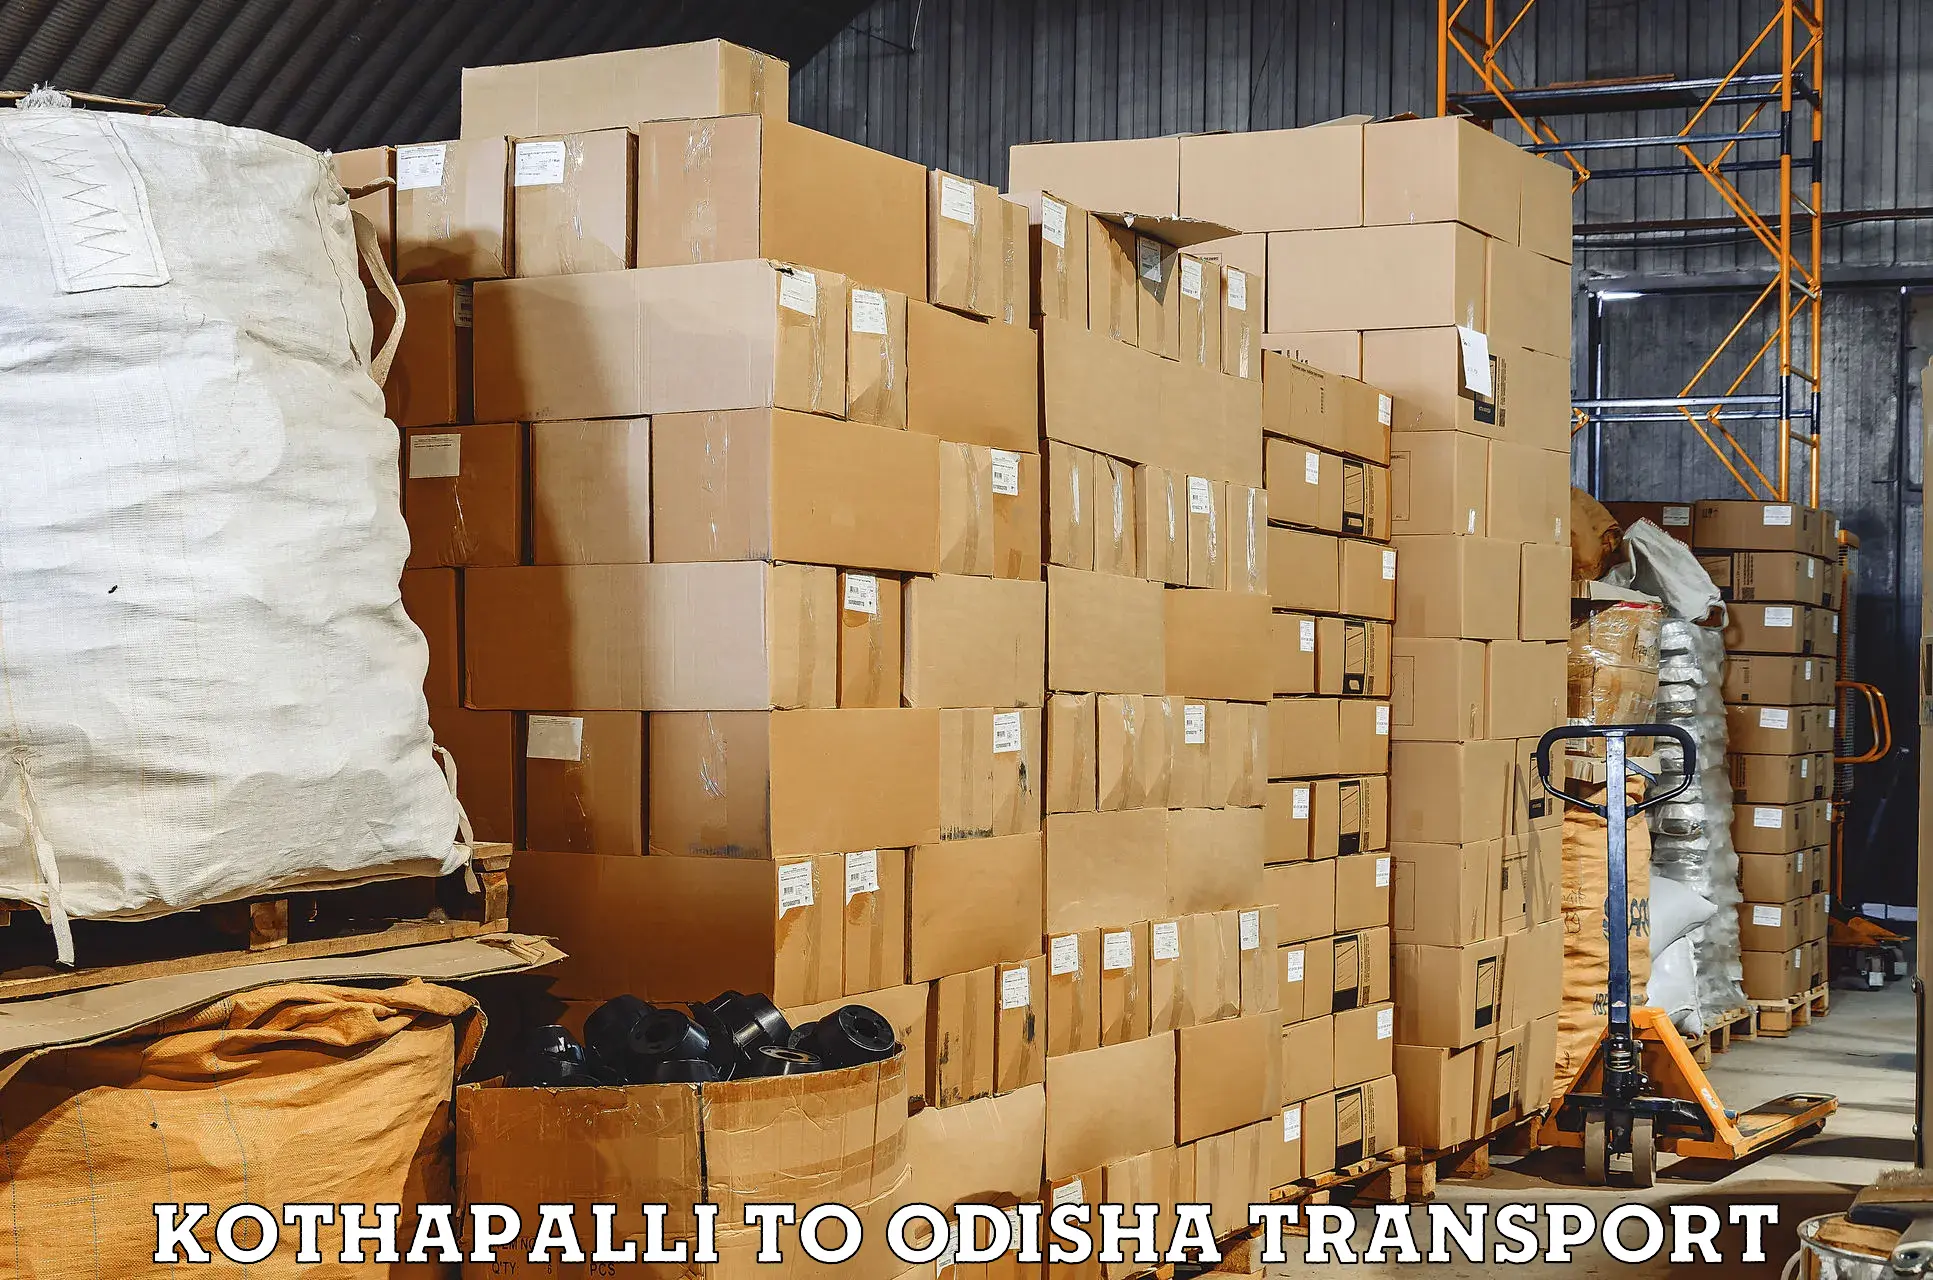 Online transport booking in Kothapalli to Rairakhol